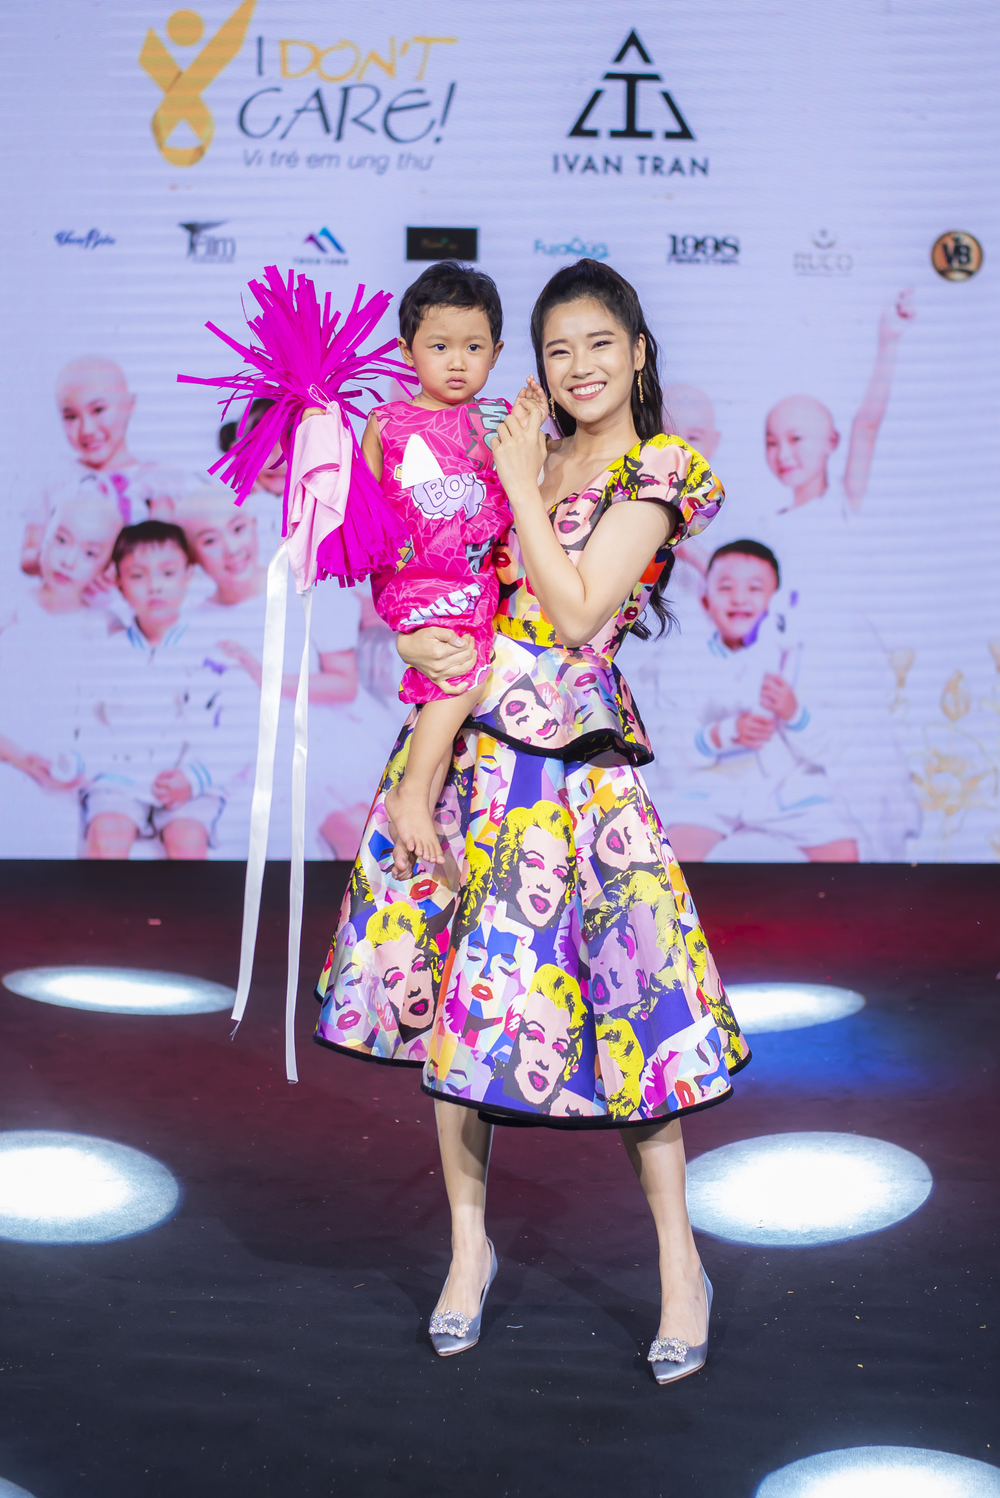  
Hoàng Yến Chibi mở đầu bằng ca khúc Em vẫn yêu đời và trình diễn thời trang cùng các em nhỏ đang phải chống trọi với căn bệnh ung thư.